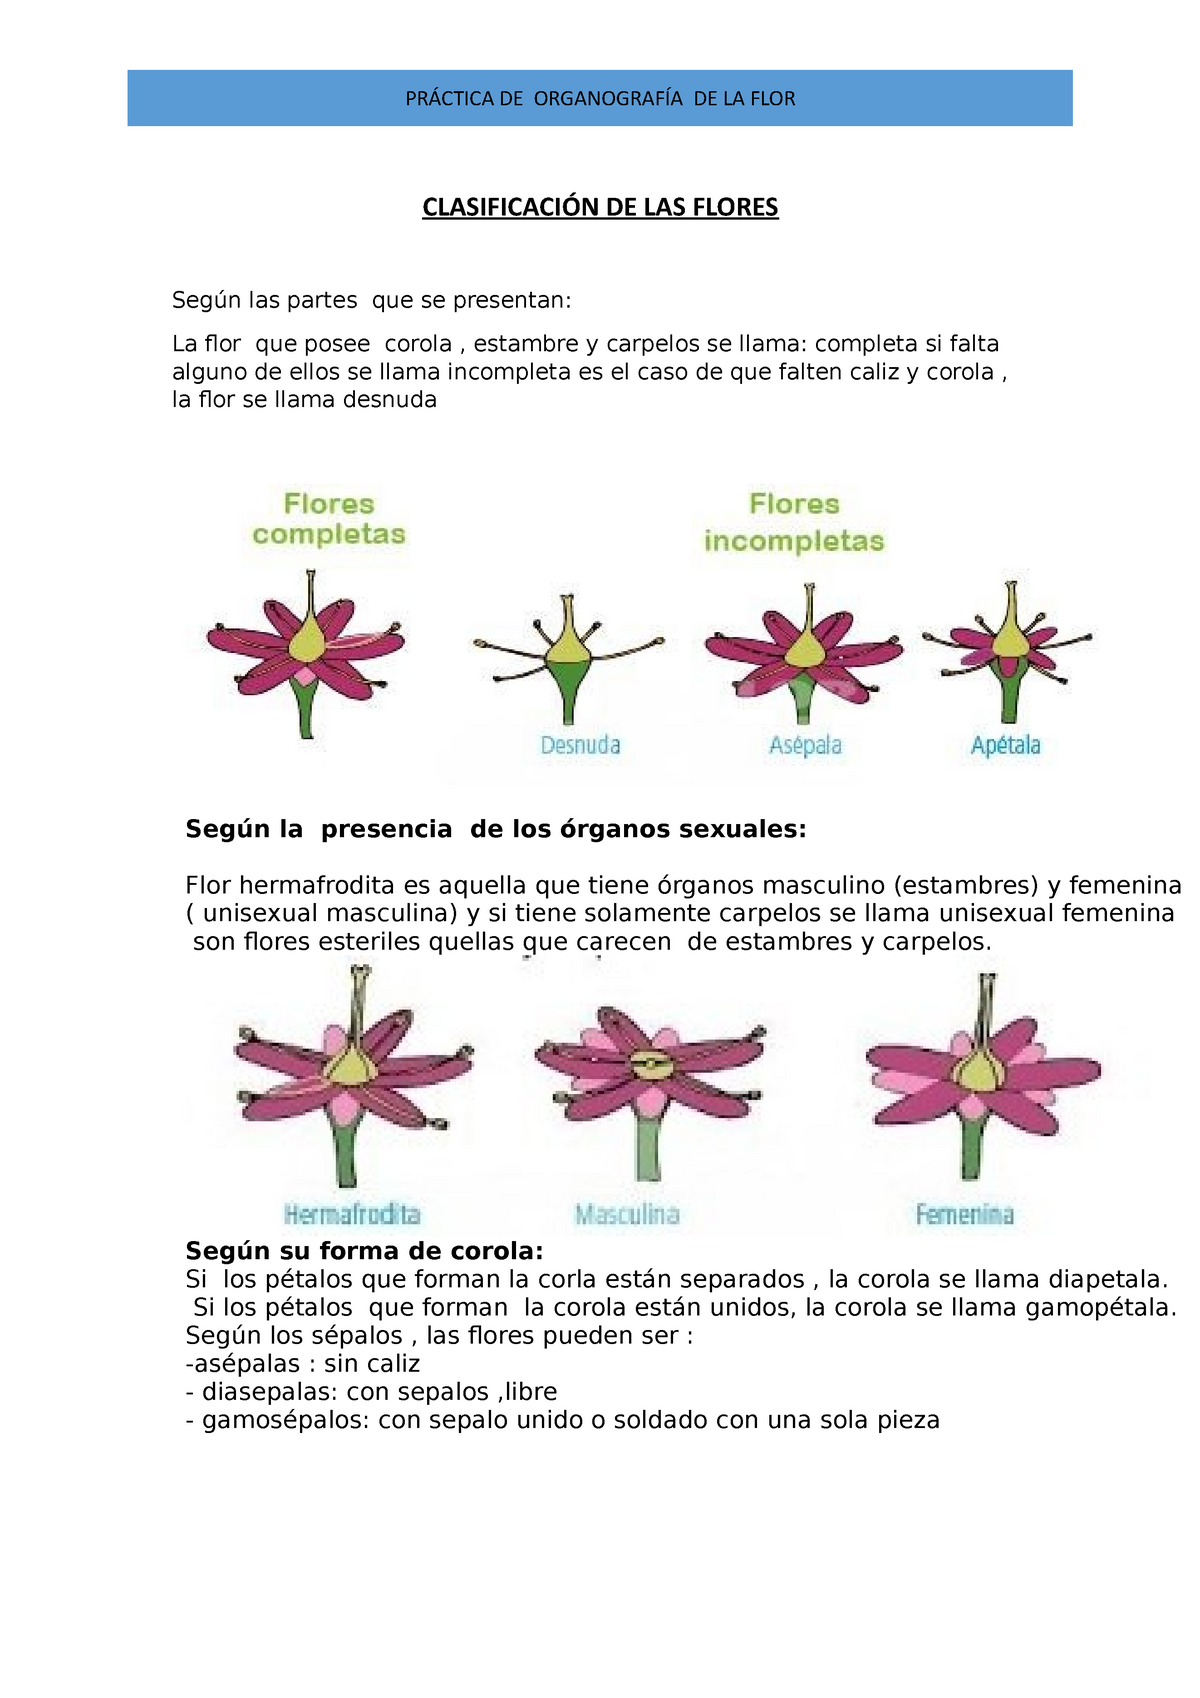 Clasificación de las flores - Botánica - UMSS - Studocu